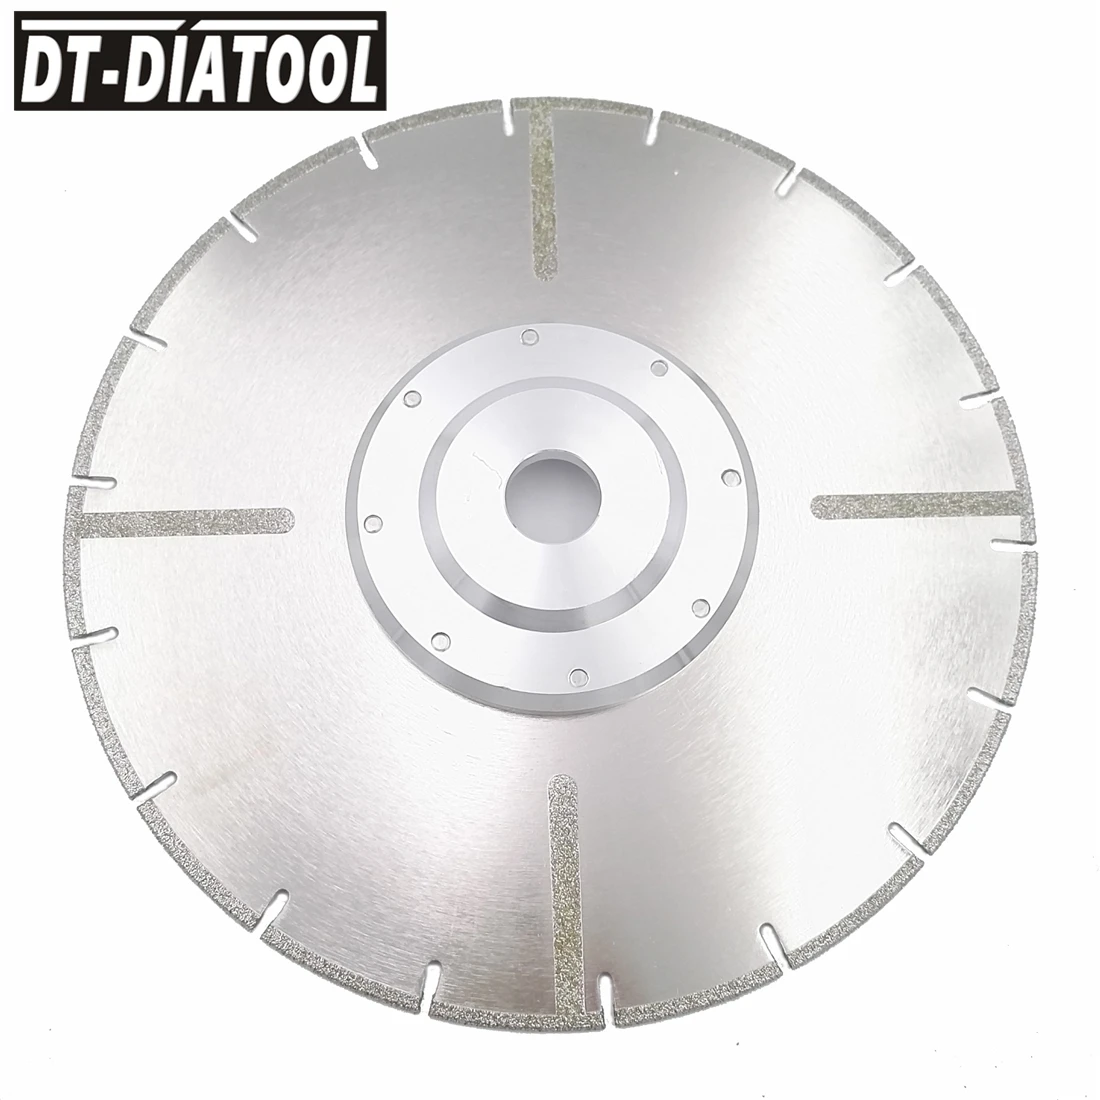 DT-DIATOOL мм 230 мм гальваническим усиленный алмазный режущий диск мм 22,23 мм фланец 9 дюйм(ов) ов) для плитки и мрамора алмазный режущий диск